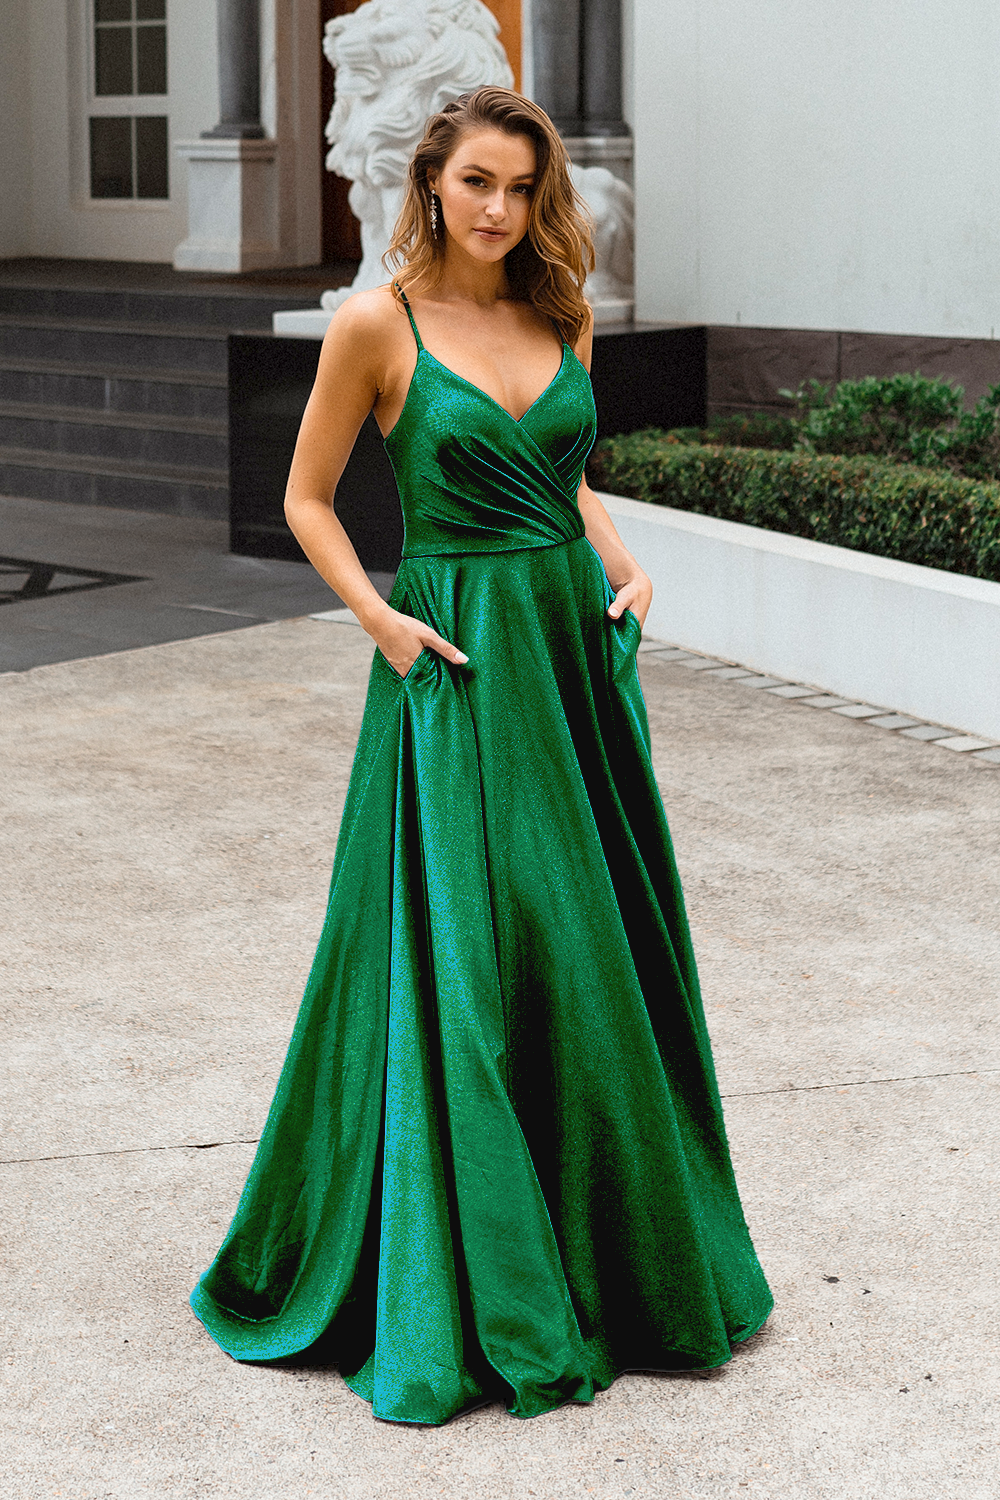 PO891 Monroe front of emerald green v-neckline, A Line, sparkle satin formal dress